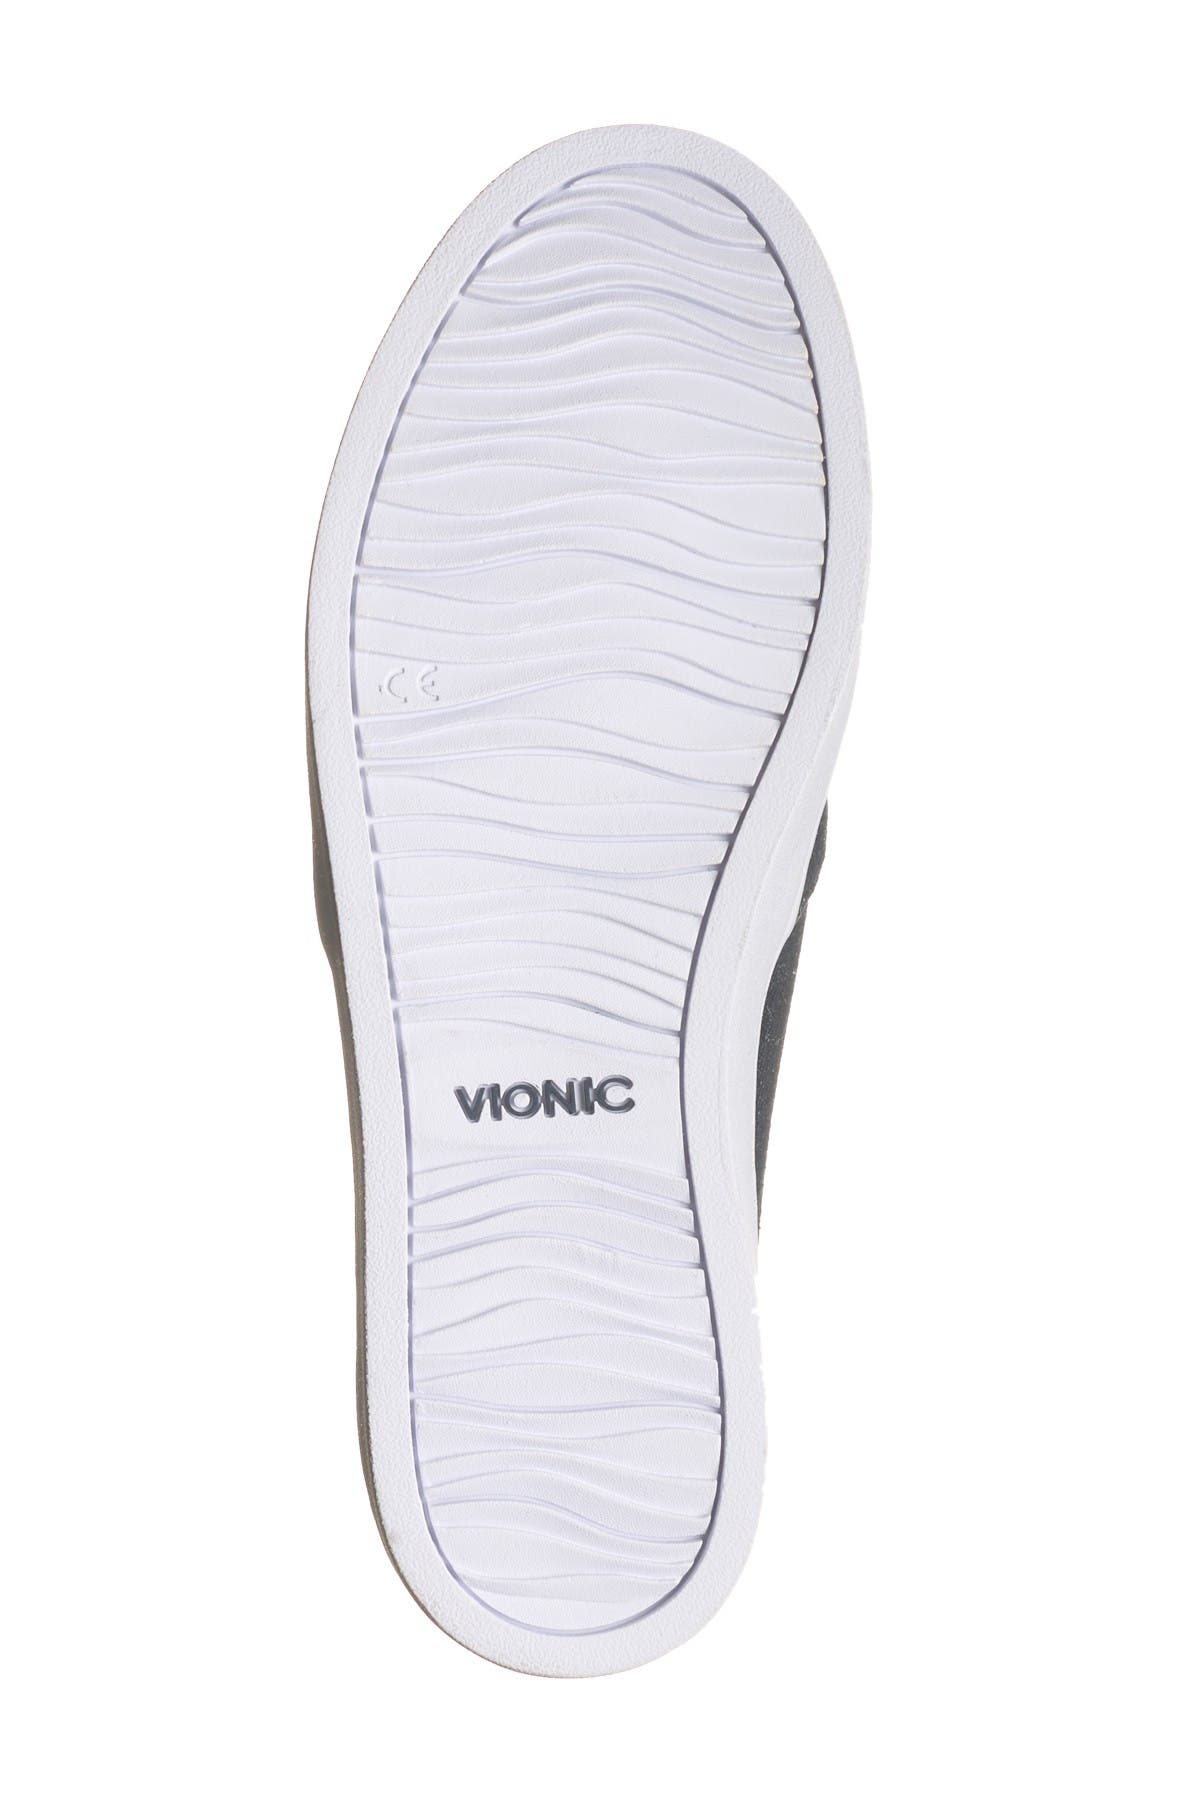 vionic midi snake slip on sneaker